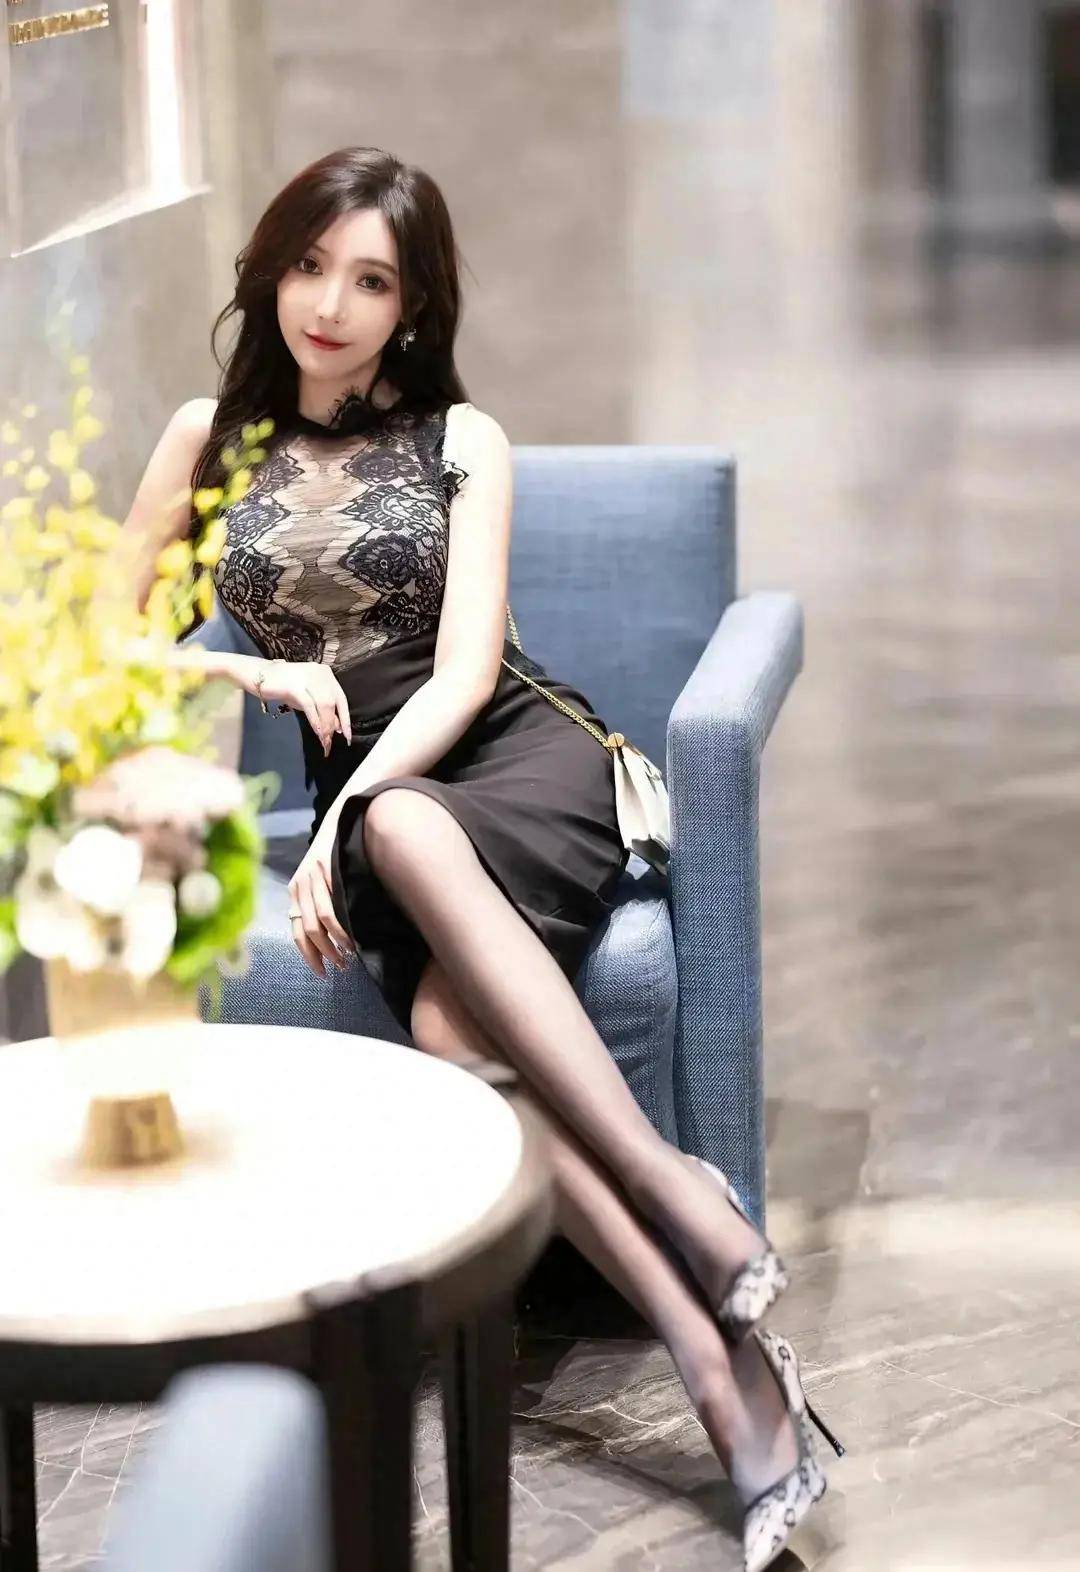 王馨瑶黑丝高跟连衣裙写真曝光,完美曲线引发热议,速来围观!